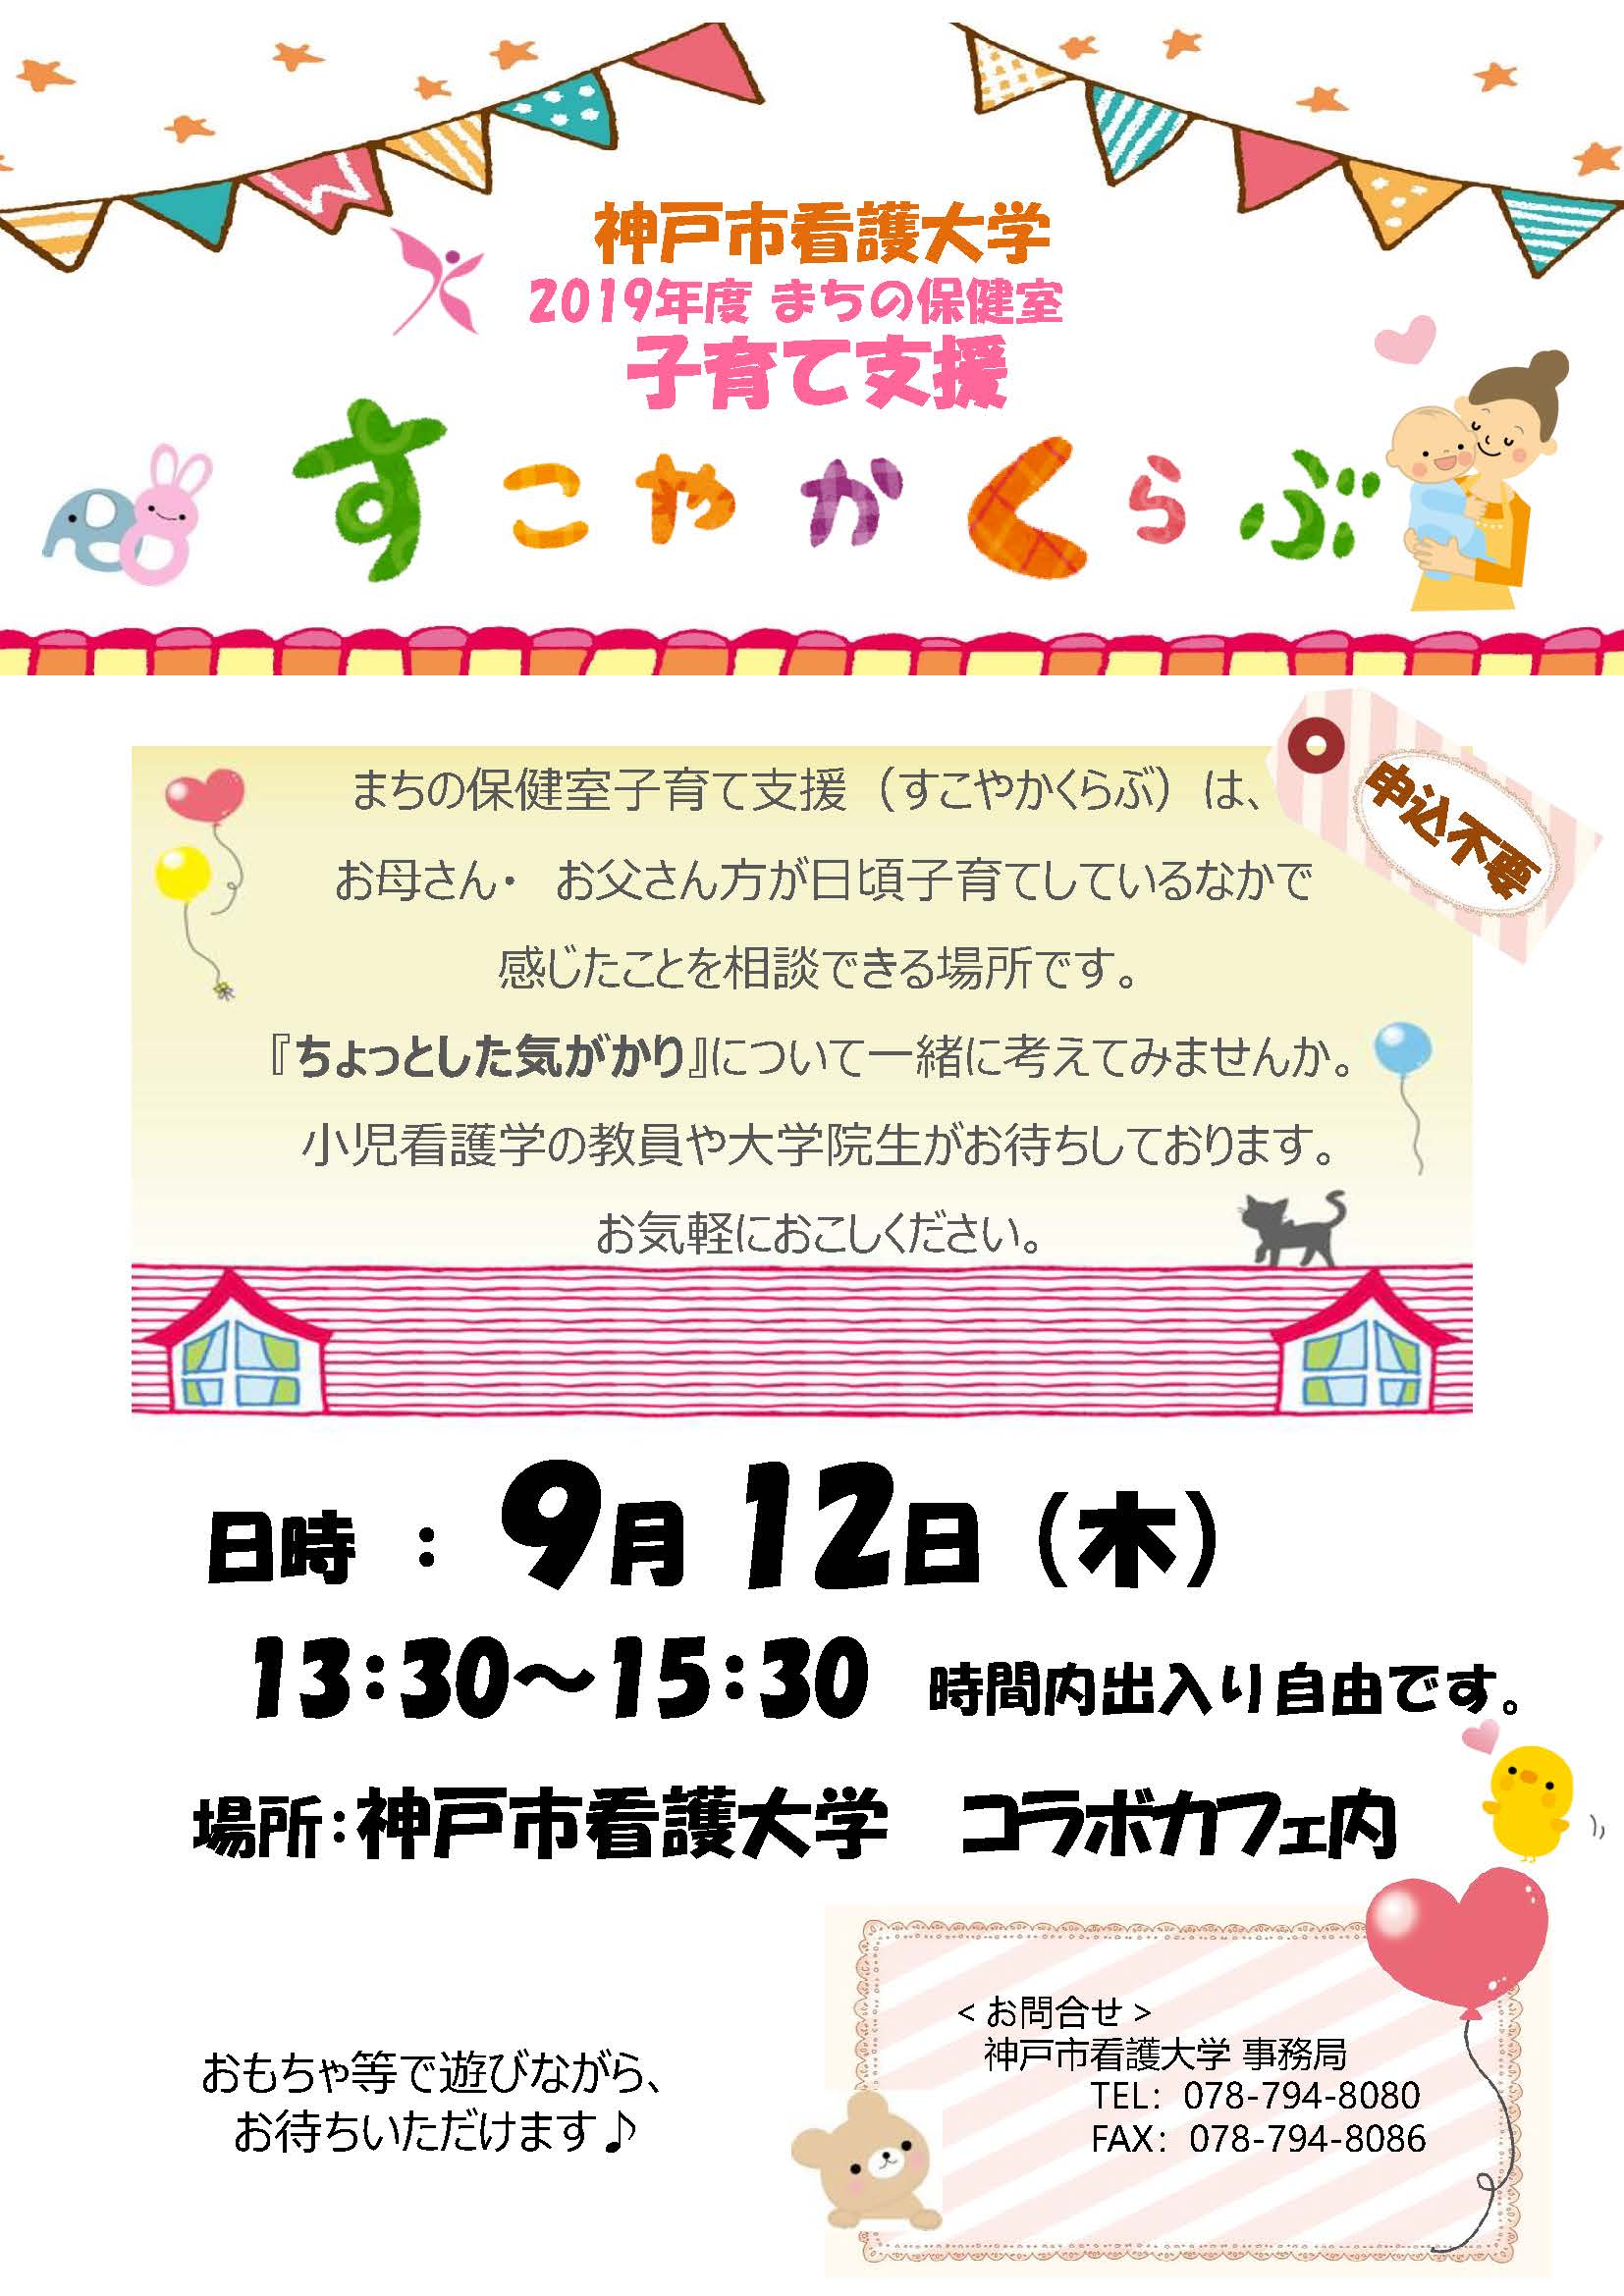 まちの保健室 19年9月12日 木 すこやかクラブを開催します 子育て支援 まちの保健室 イベント お知らせ 神戸市看護大学